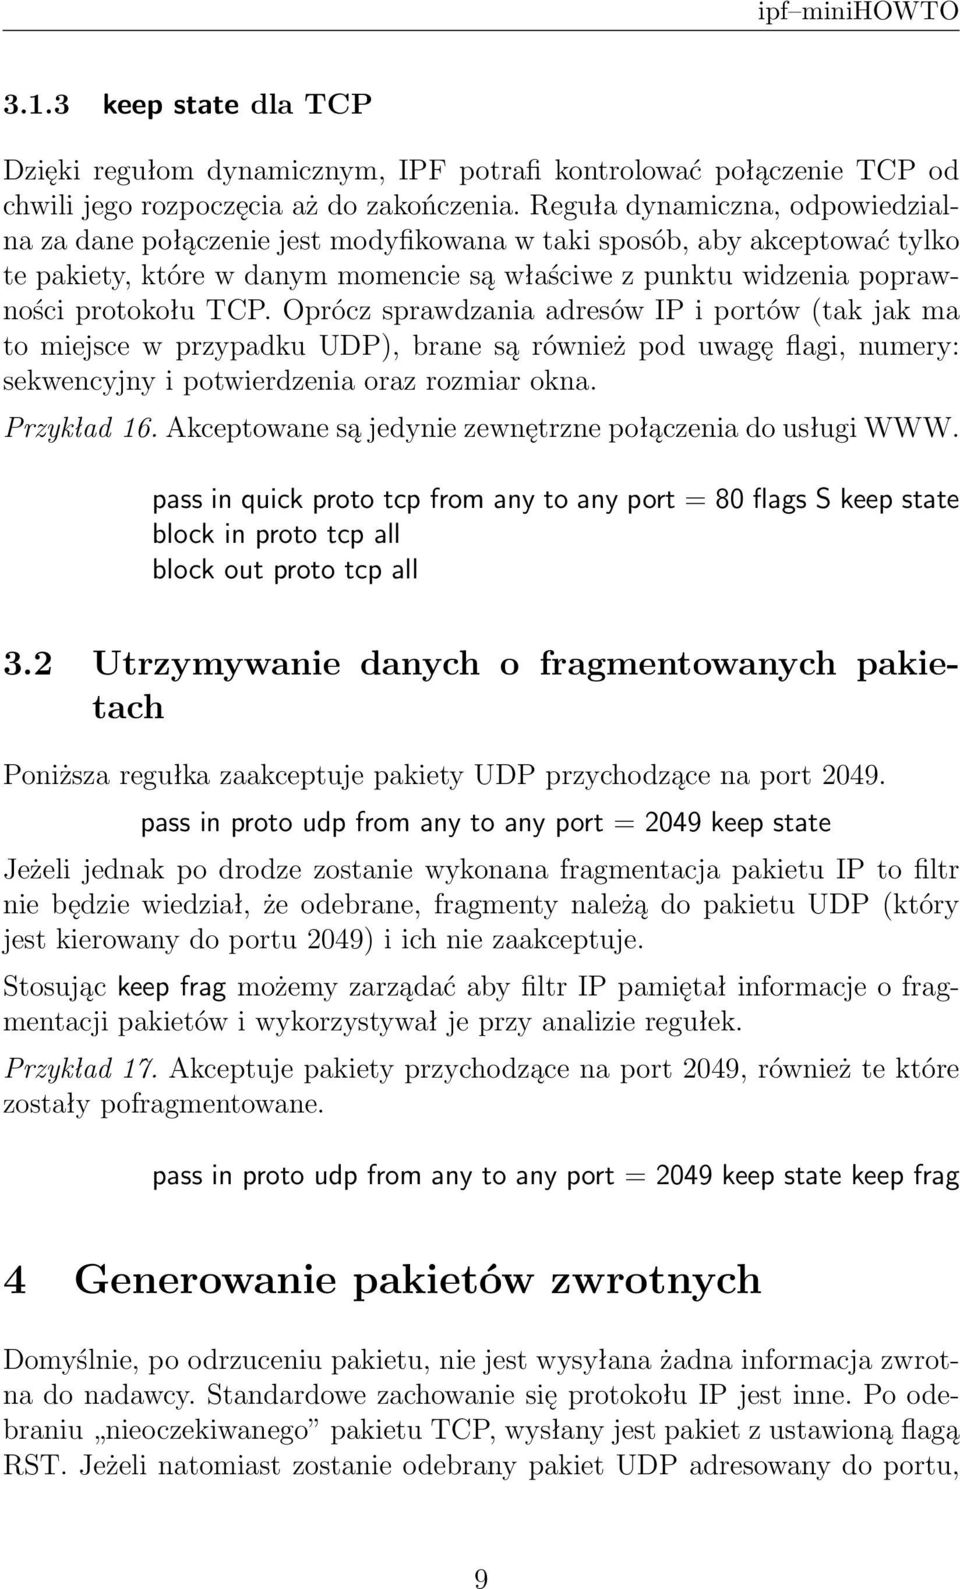 Oprócz sprawdzania adresów IP i portów (tak jak ma to miejsce w przypadku UDP), brane są również pod uwagę flagi, numery: sekwencyjny i potwierdzenia oraz rozmiar okna. Przykład 16.